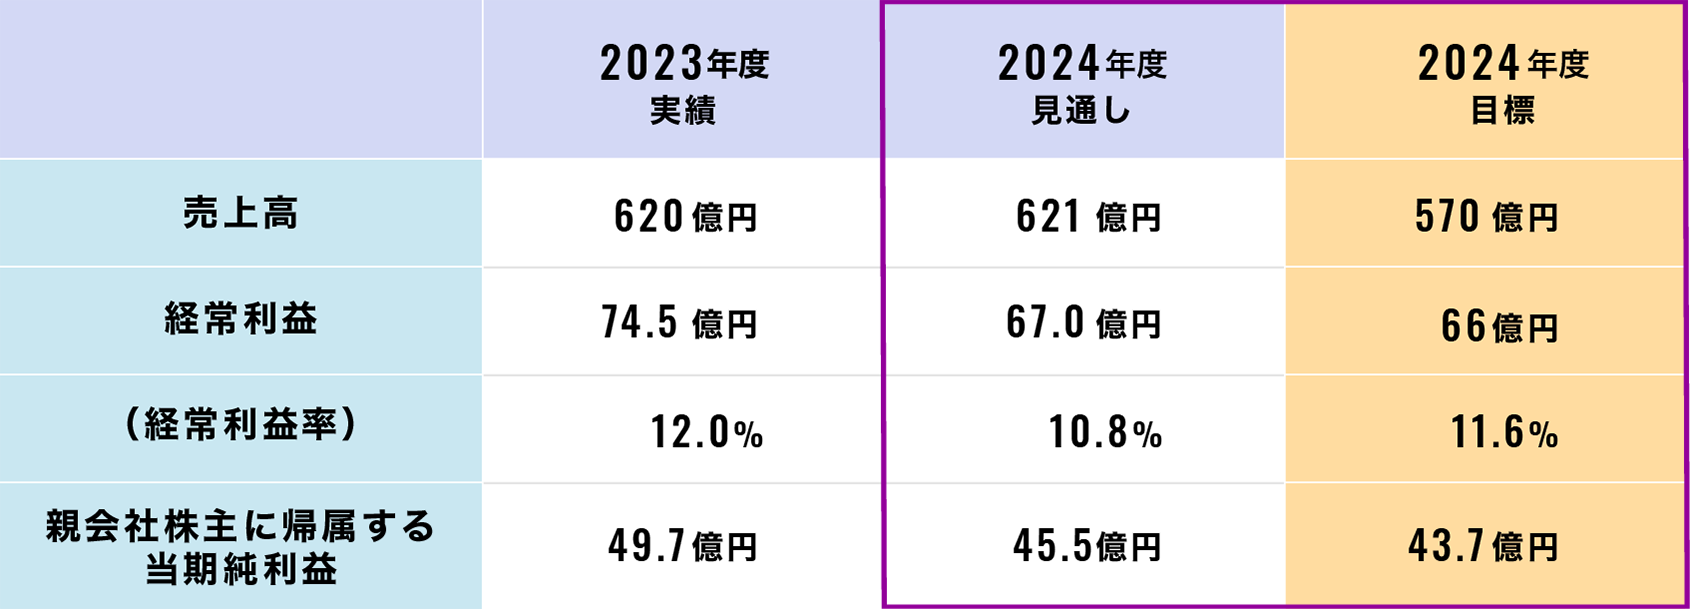 中期経営計画（2022-2024年度）業績見通し（連結：2023年度実績・2024年度見込み比）